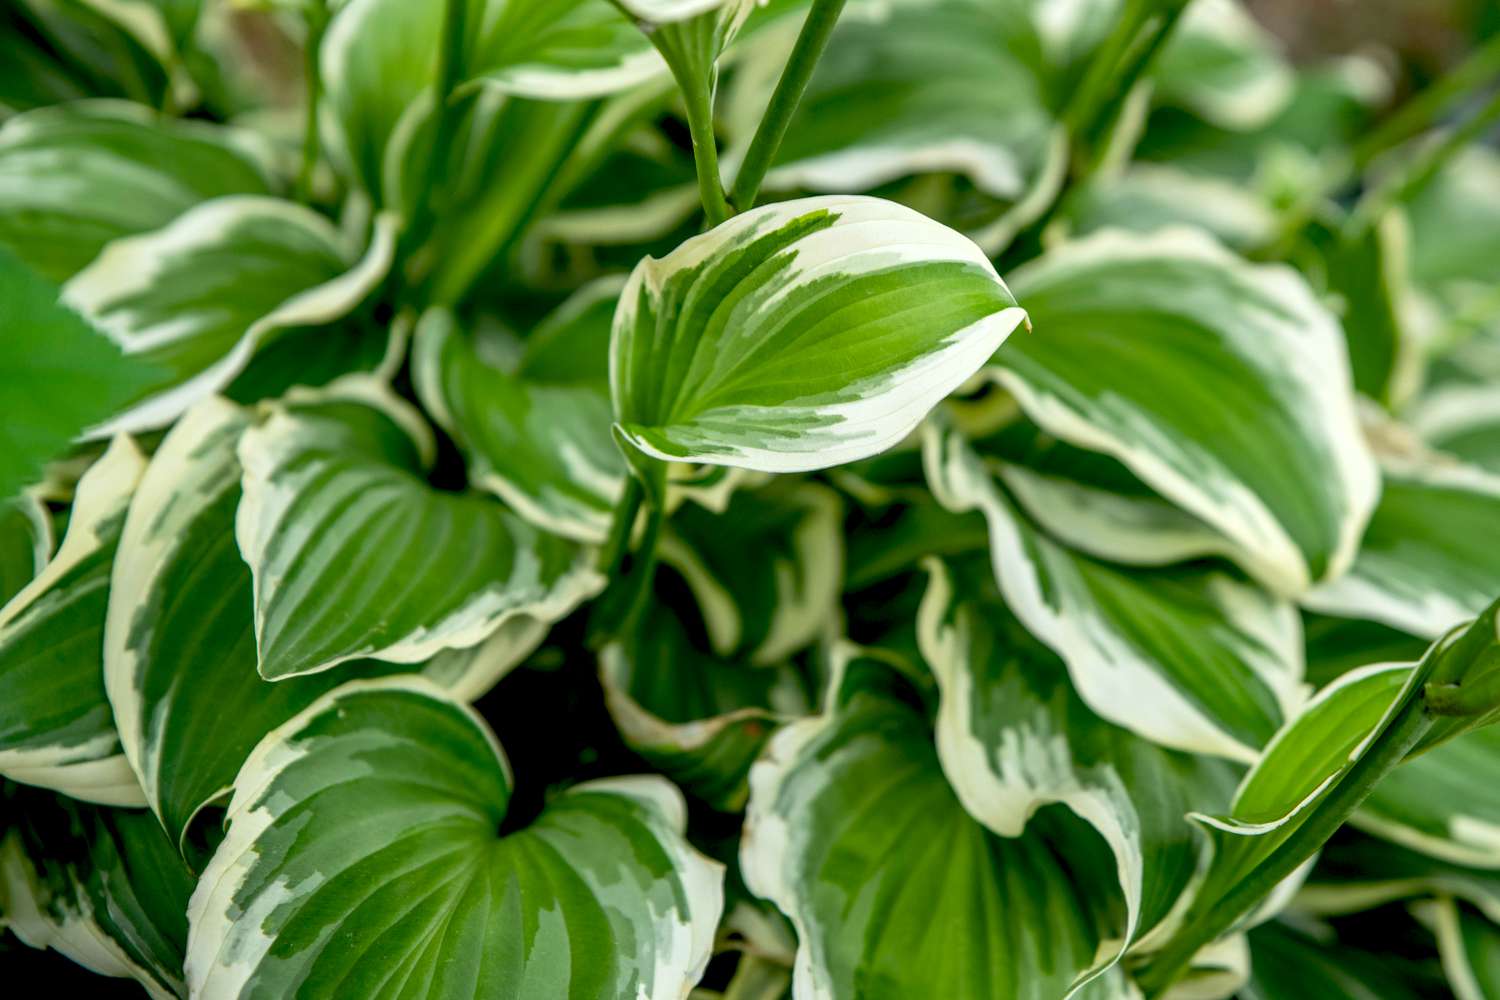 Planta hosta da França com folhas variegadas verdes e brancas em forma de coração crescendo juntas